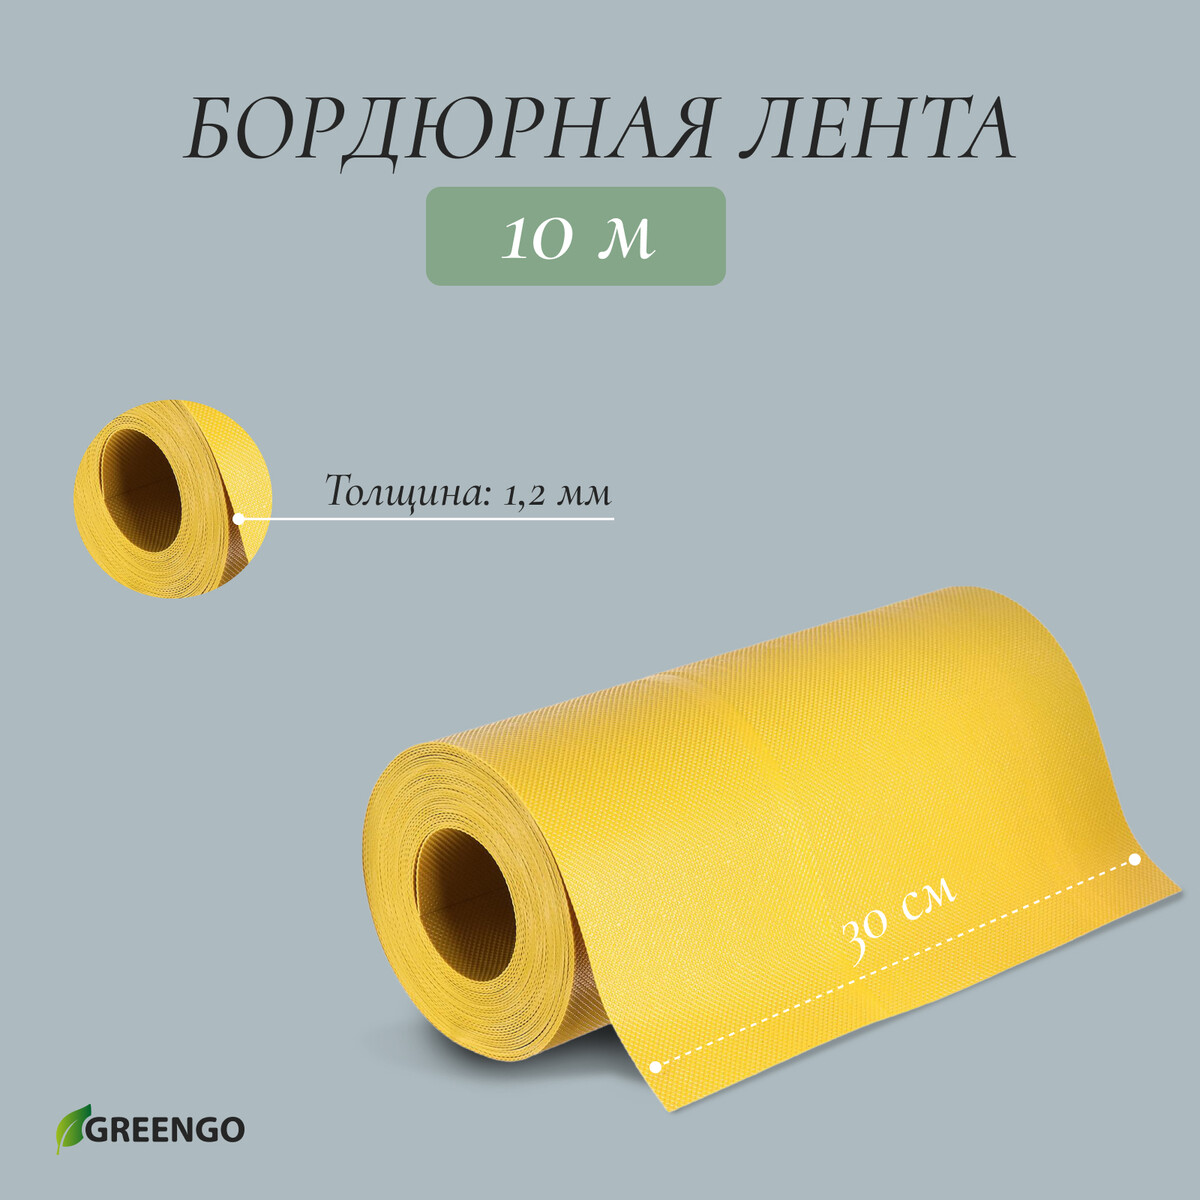 Лента бордюрная, 0.3 × 10 м, толщина 1.2 мм, пластиковая, желтая, greengo лента бордюрная 0 15 × 9 м толщина 1 2 мм пластиковая фигурная коричневая greengo